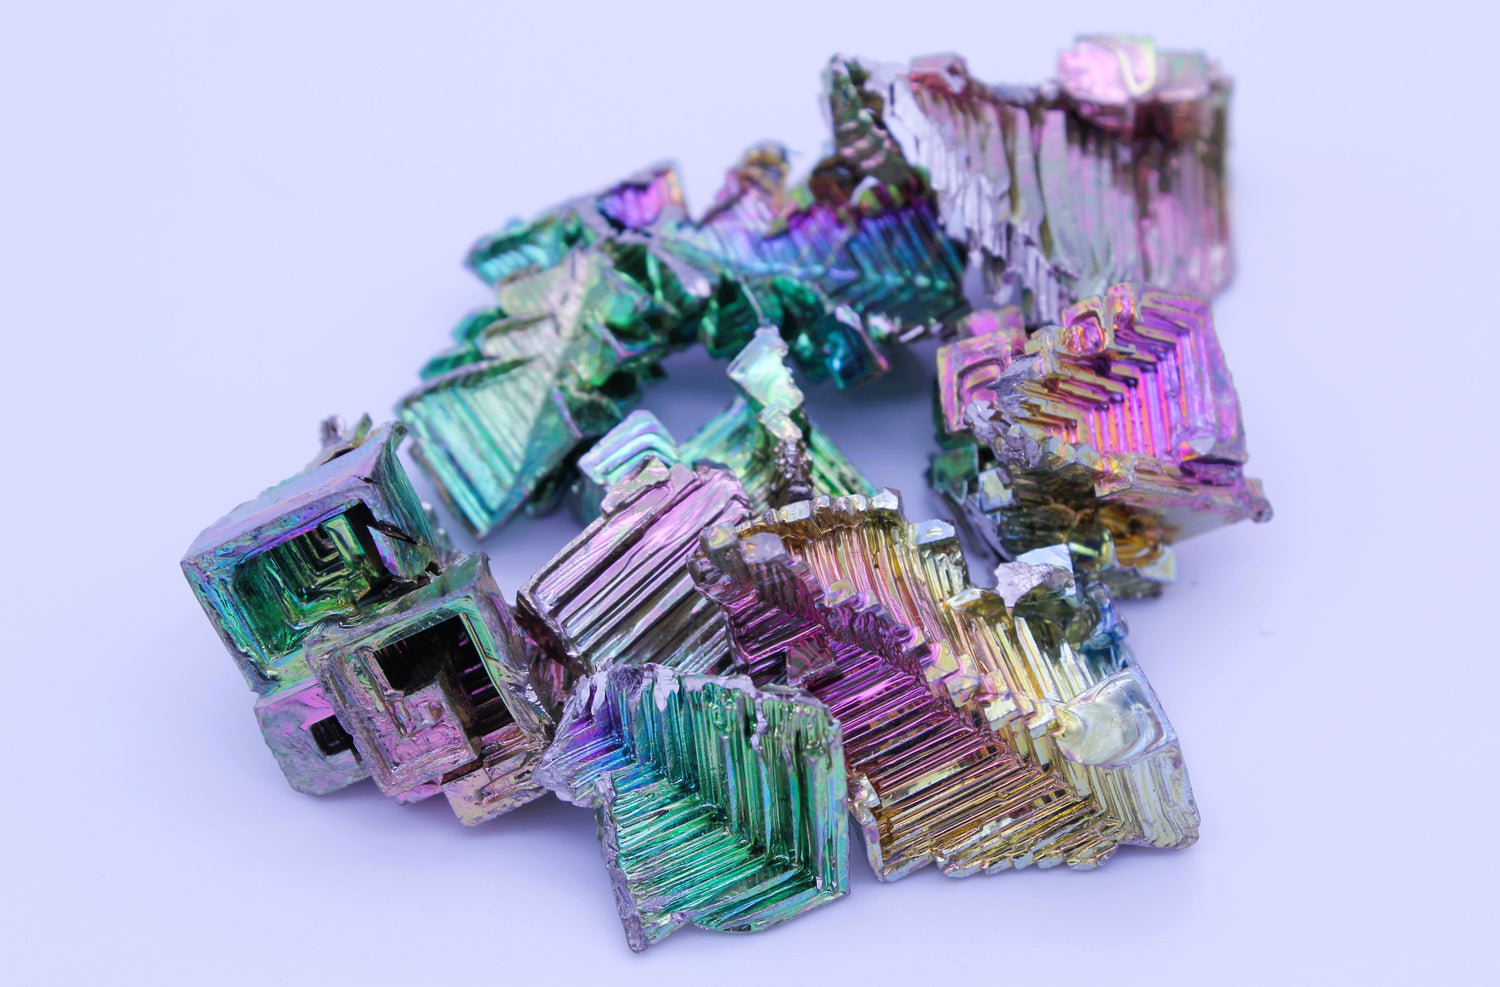 Raw Bismuth pieces